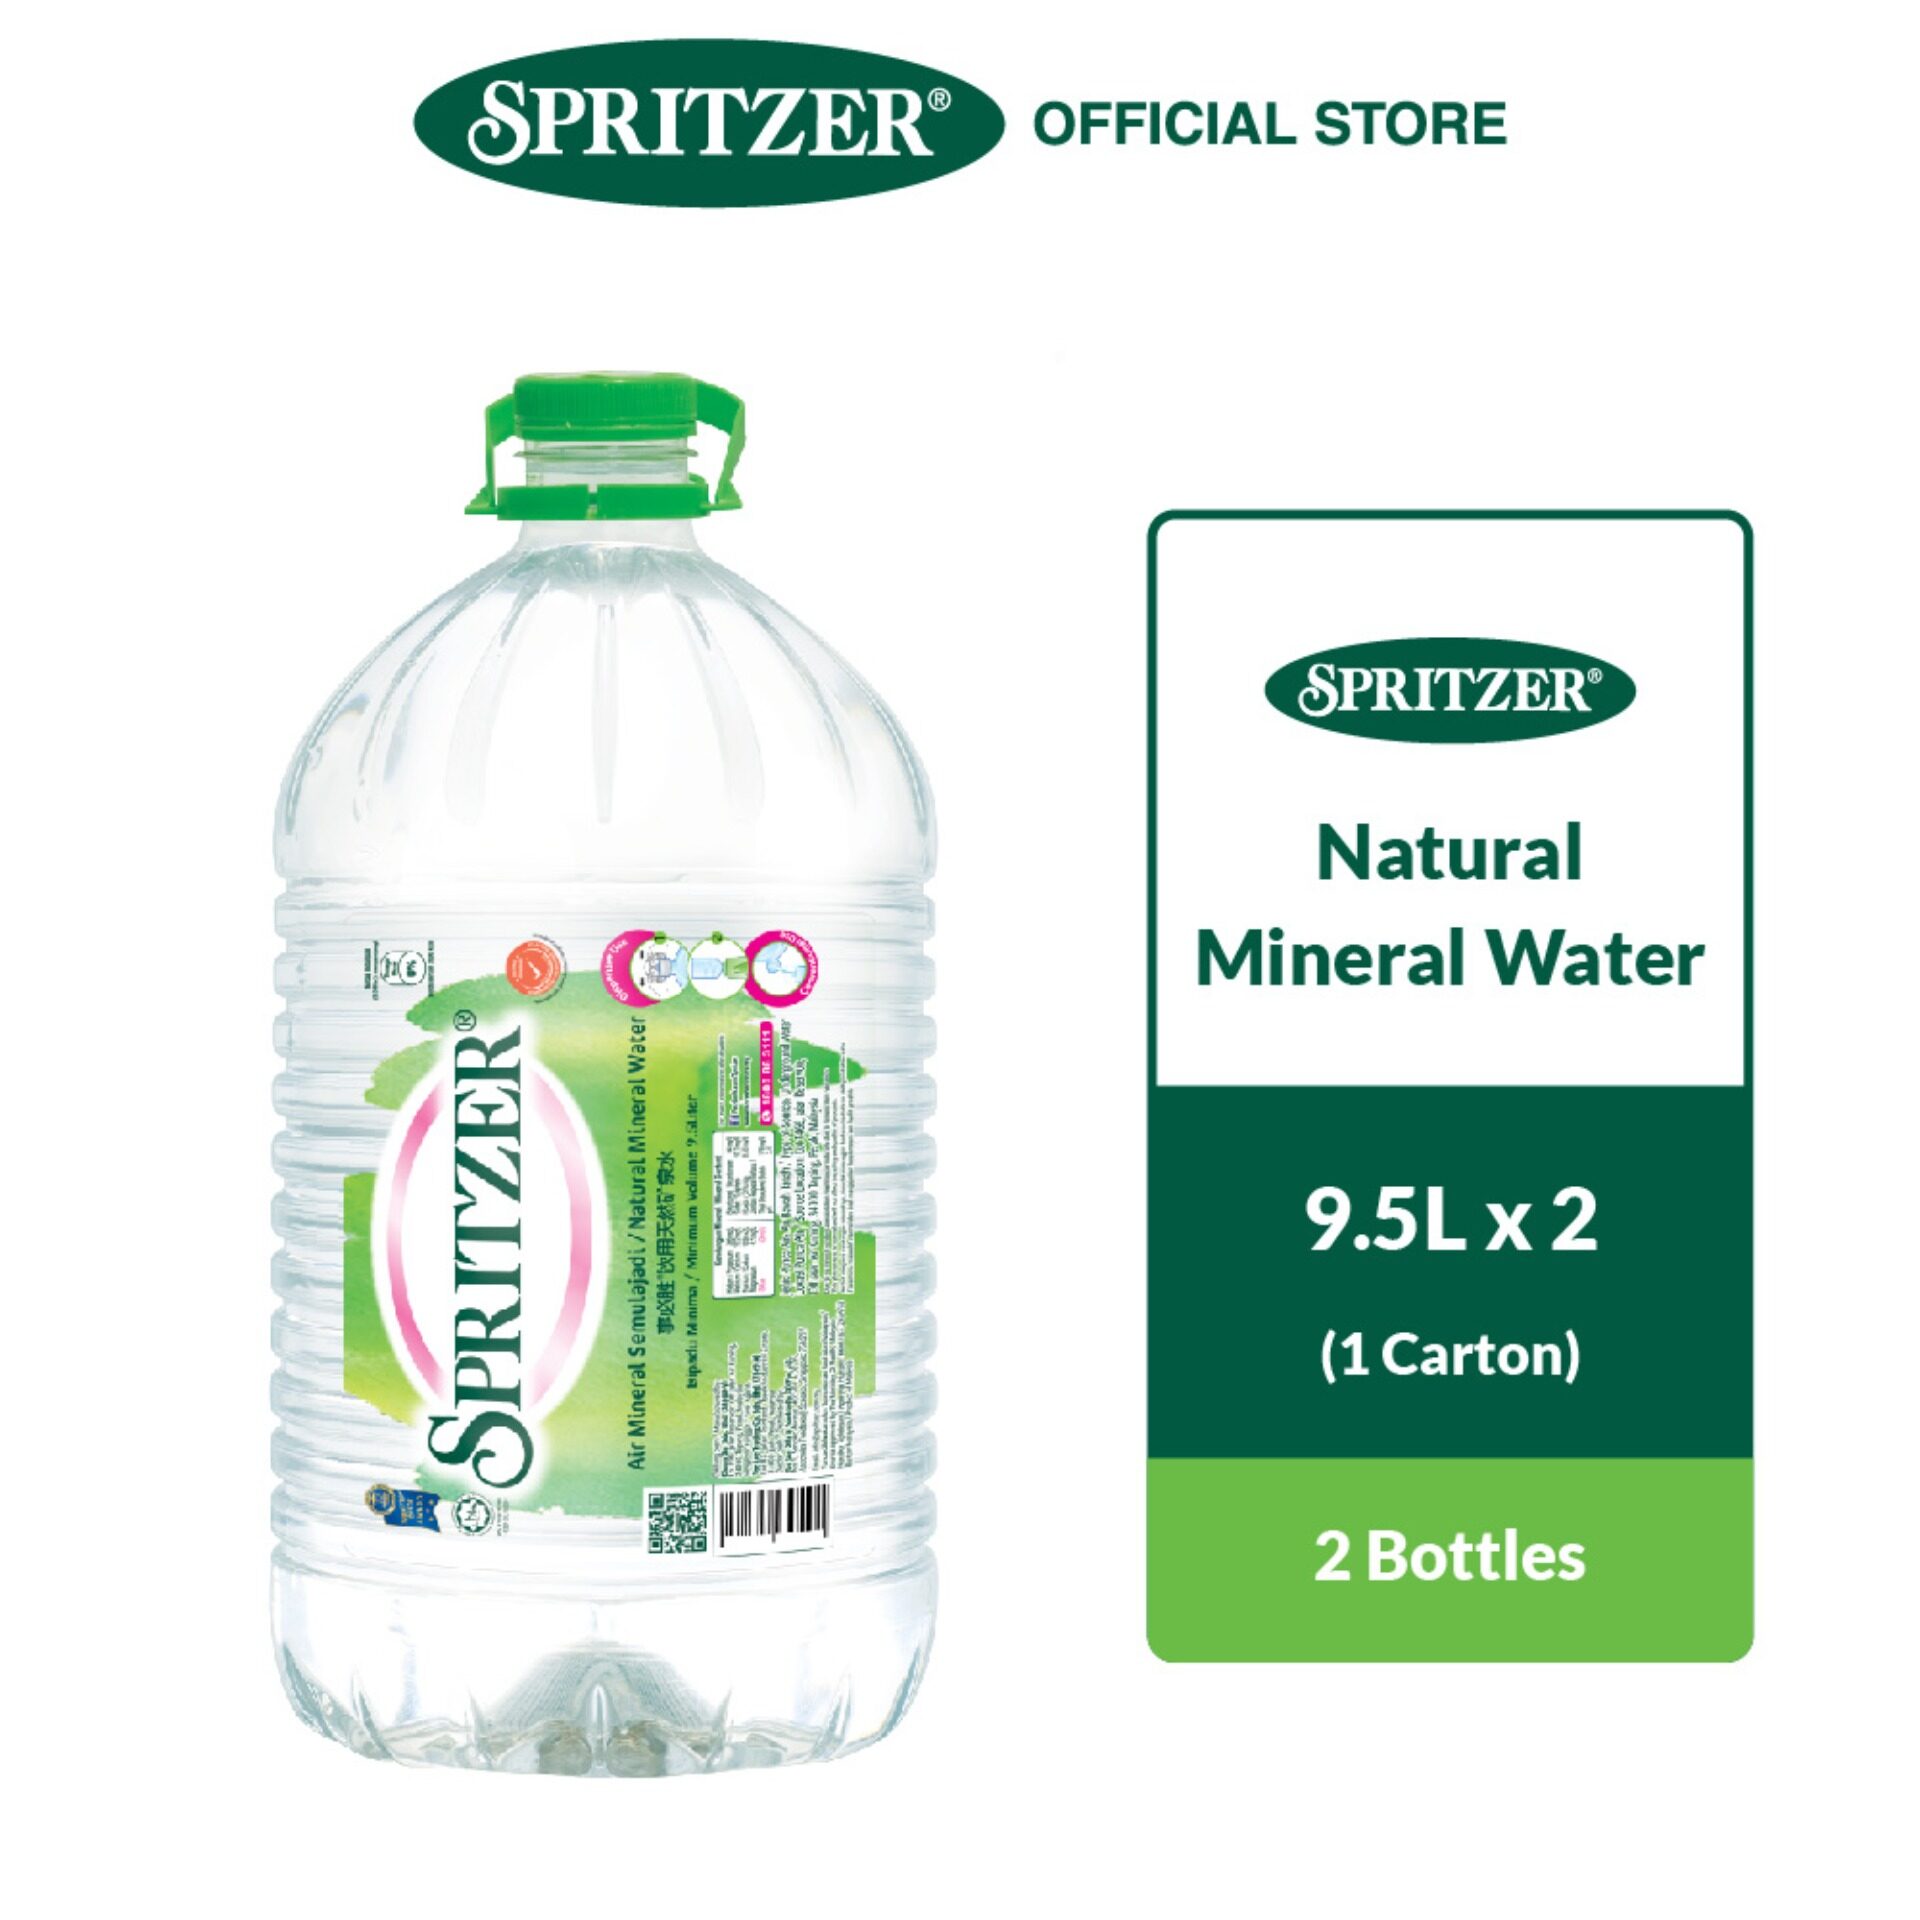 Spritzer mineral water